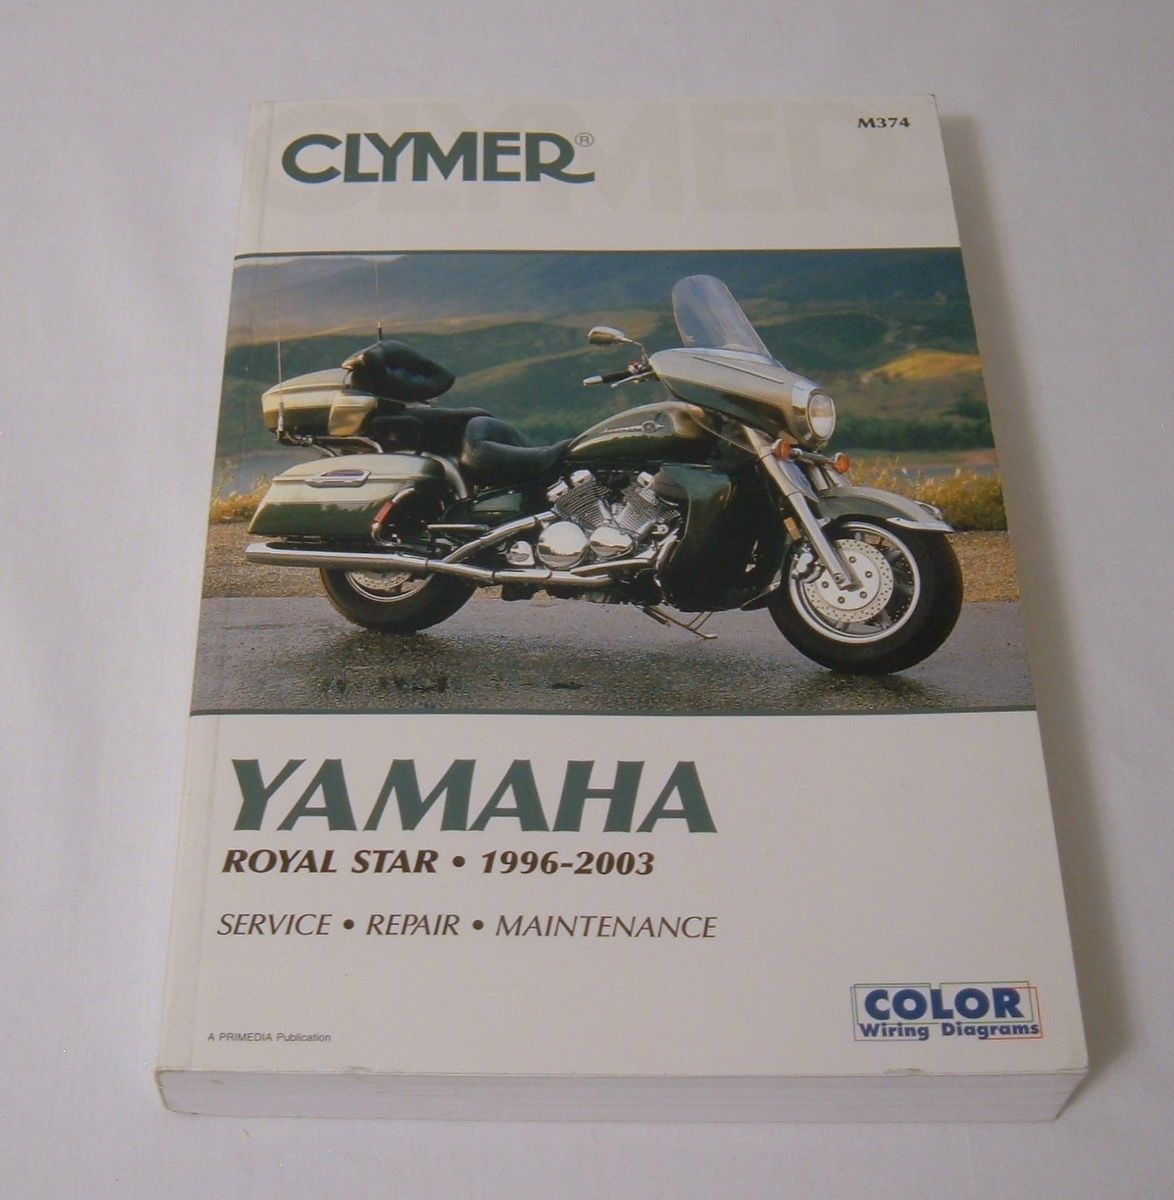 Clymer Yamaha Royal Star Service Maintenance Repair Manual 1996 2003